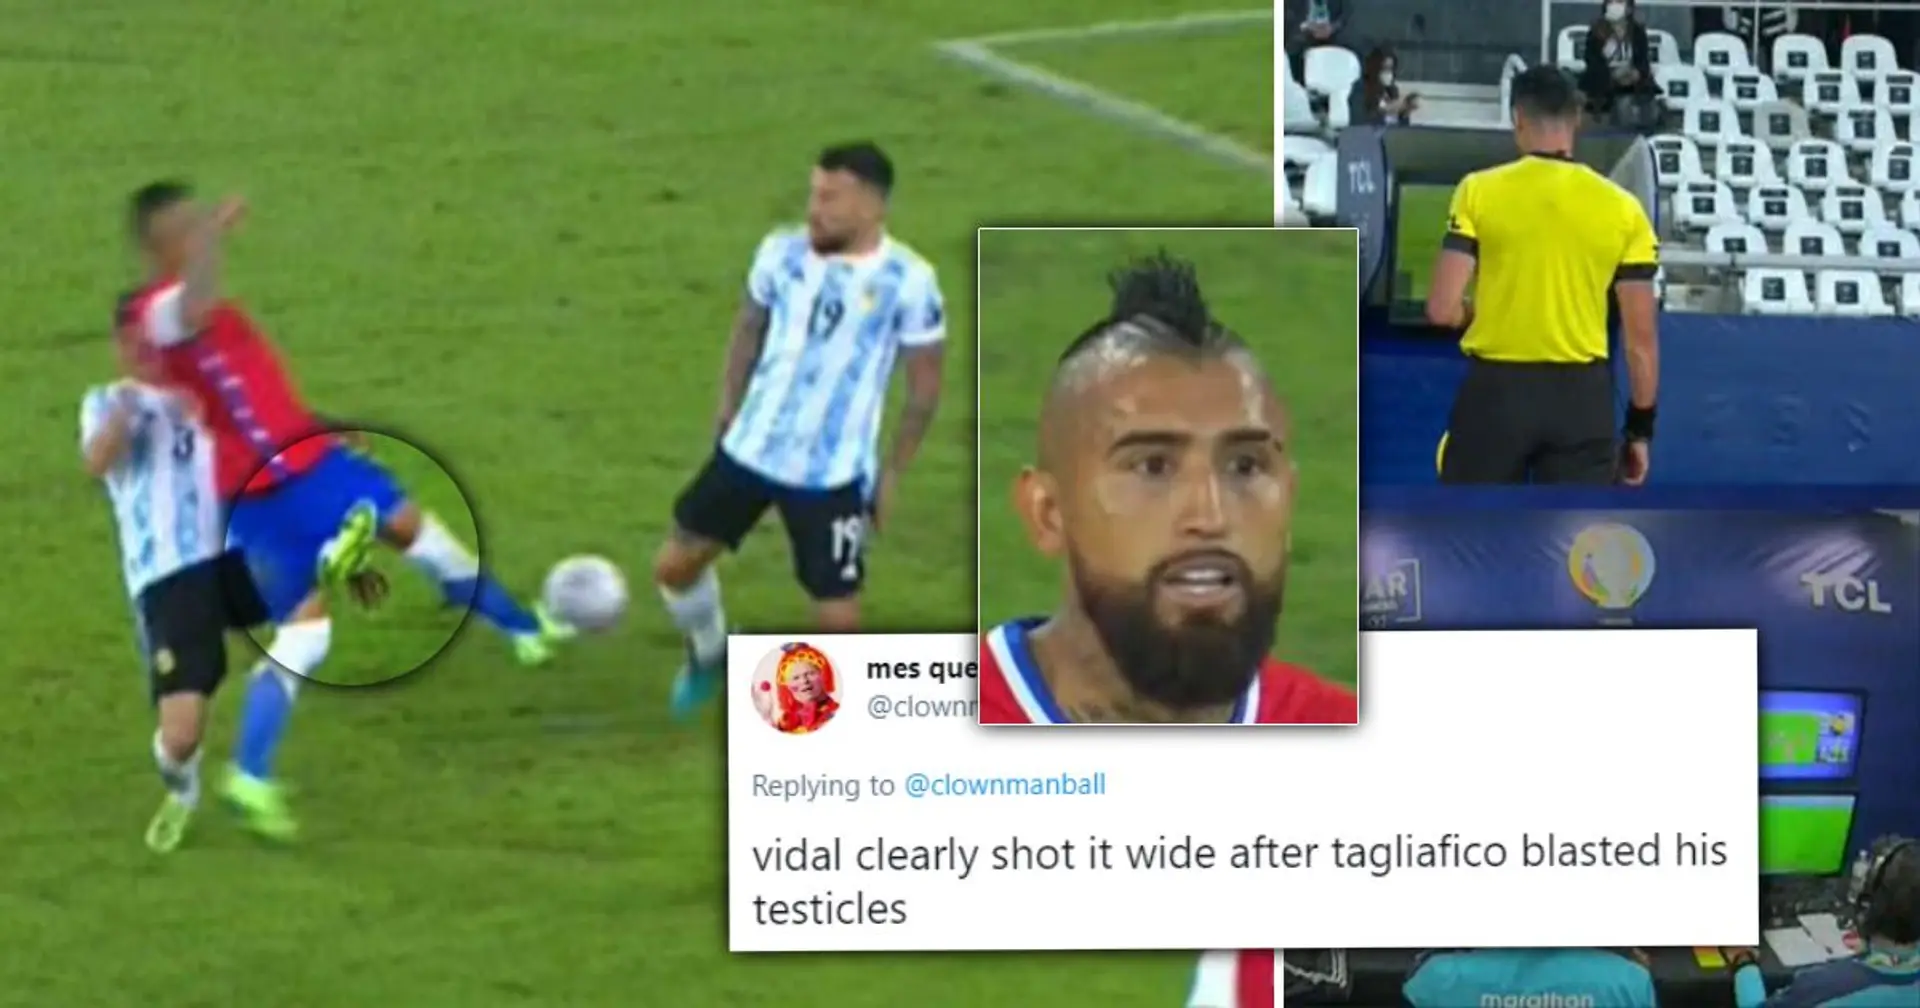 "Il transforme presque Vidal en eunuque et les fans argentins disent toujours que ce n'est pas un penalty": Un tacle maladroit lors du match Argentine vs Chili suscite beaucoup de débats – et de blagues